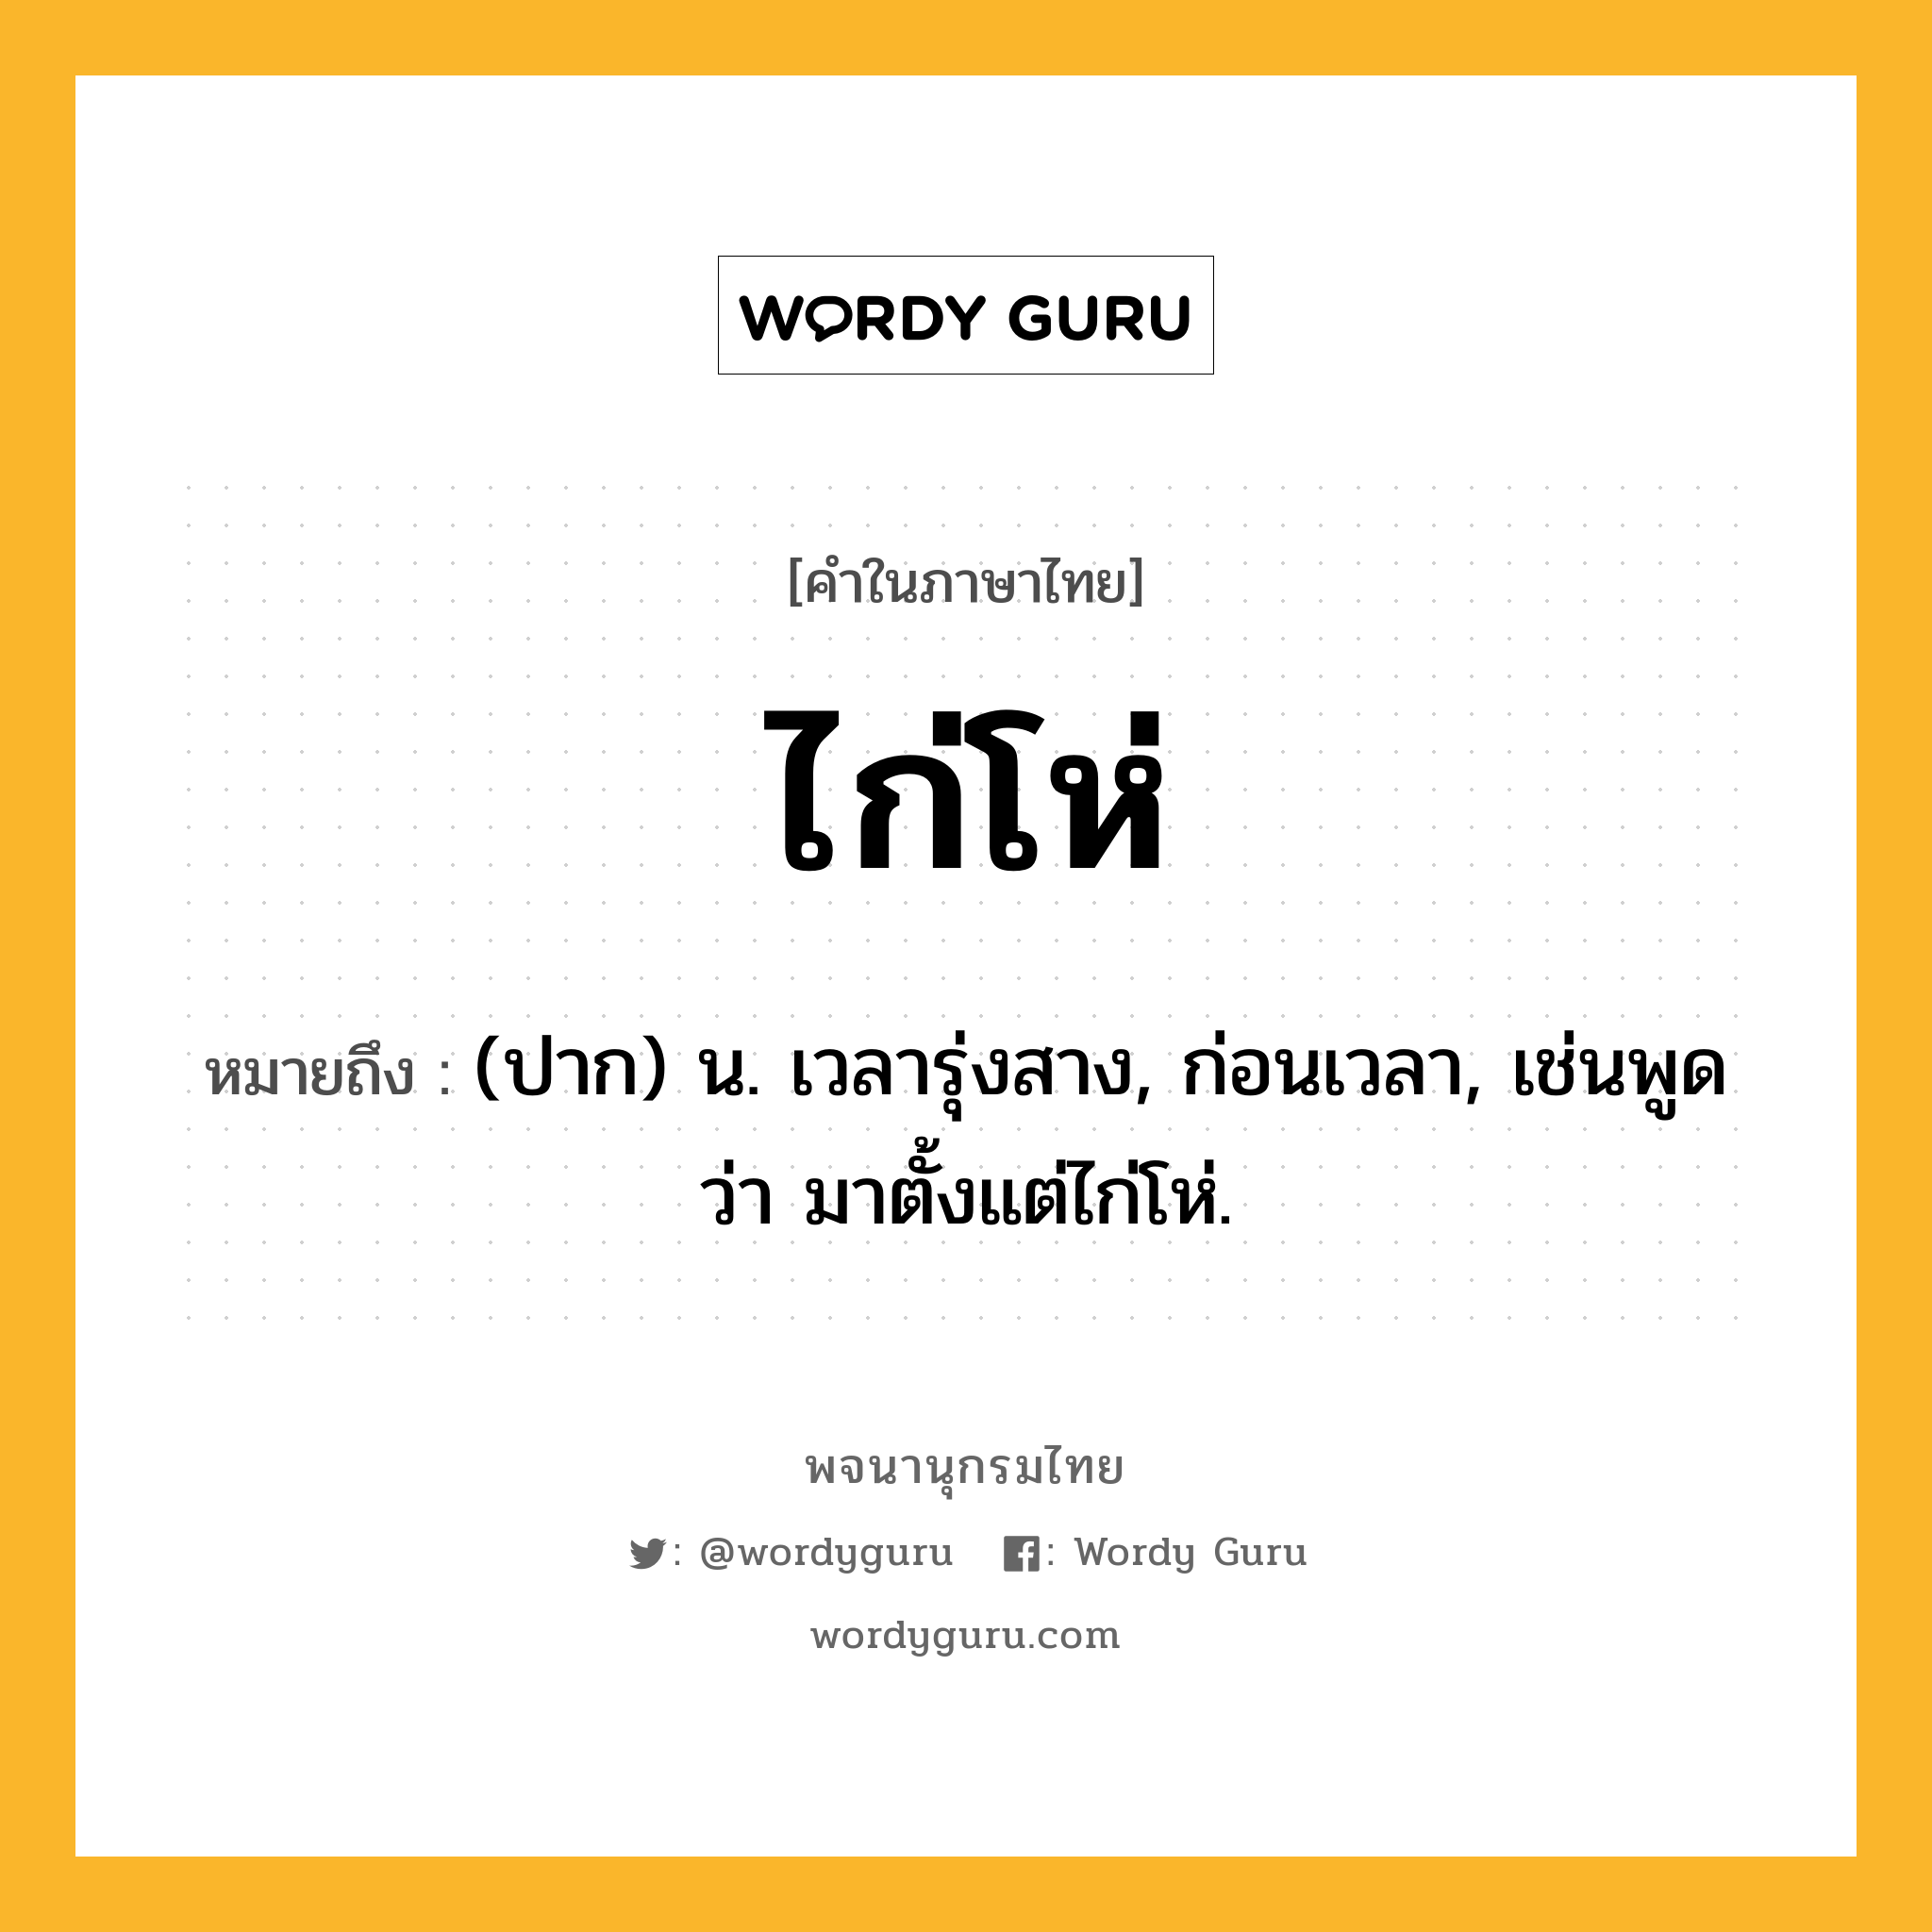 ไก่โห่ หมายถึงอะไร?, คำในภาษาไทย ไก่โห่ หมายถึง (ปาก) น. เวลารุ่งสาง, ก่อนเวลา, เช่นพูดว่า มาตั้งแต่ไก่โห่.